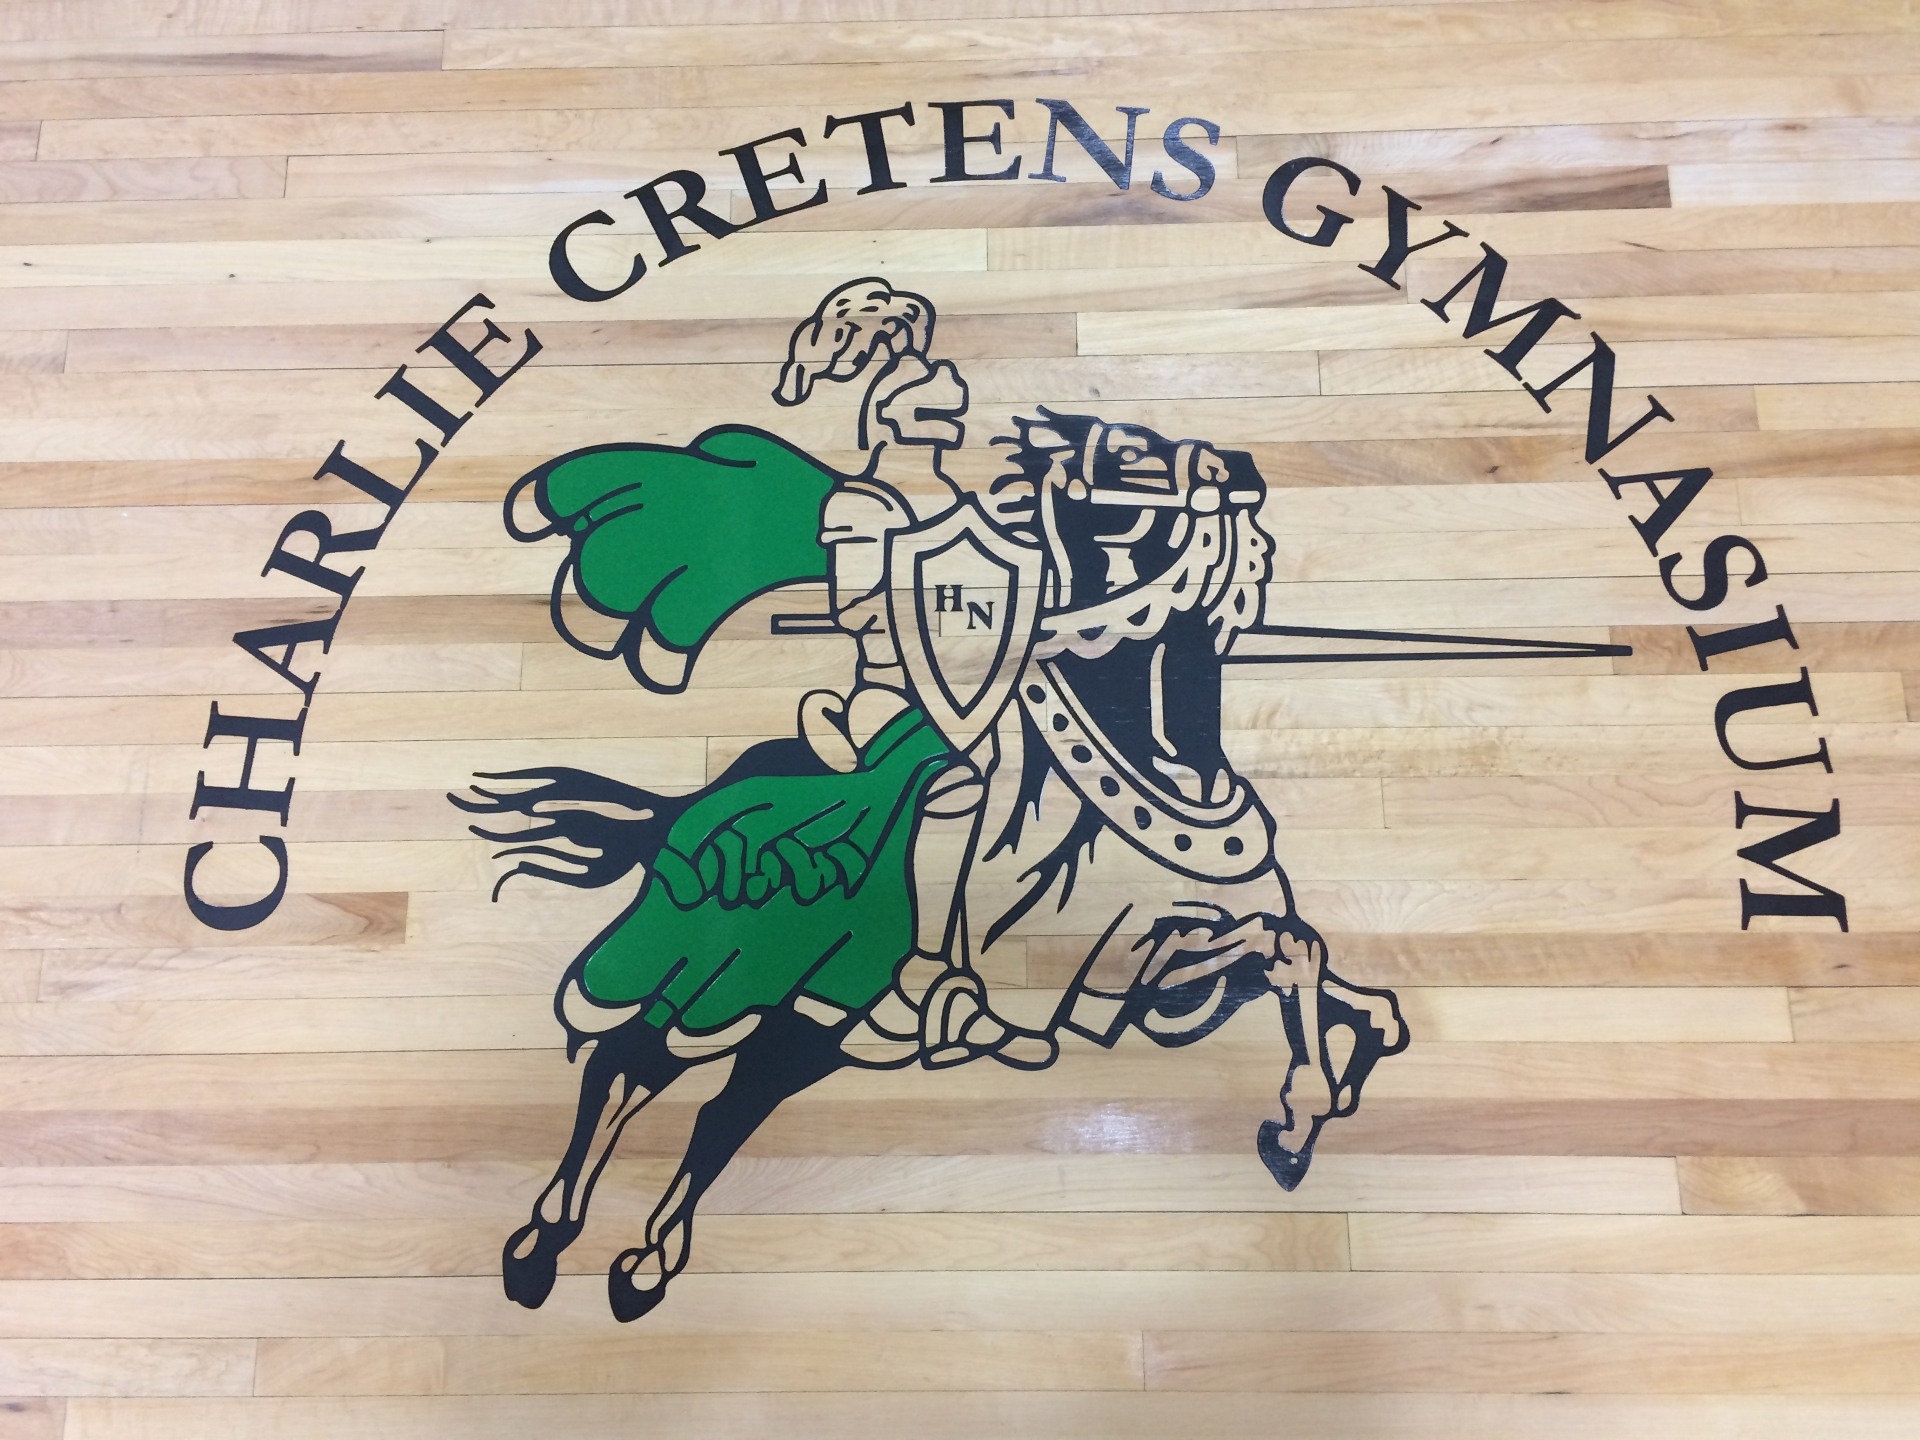 Charlie Cretens Memorial Gymnasium